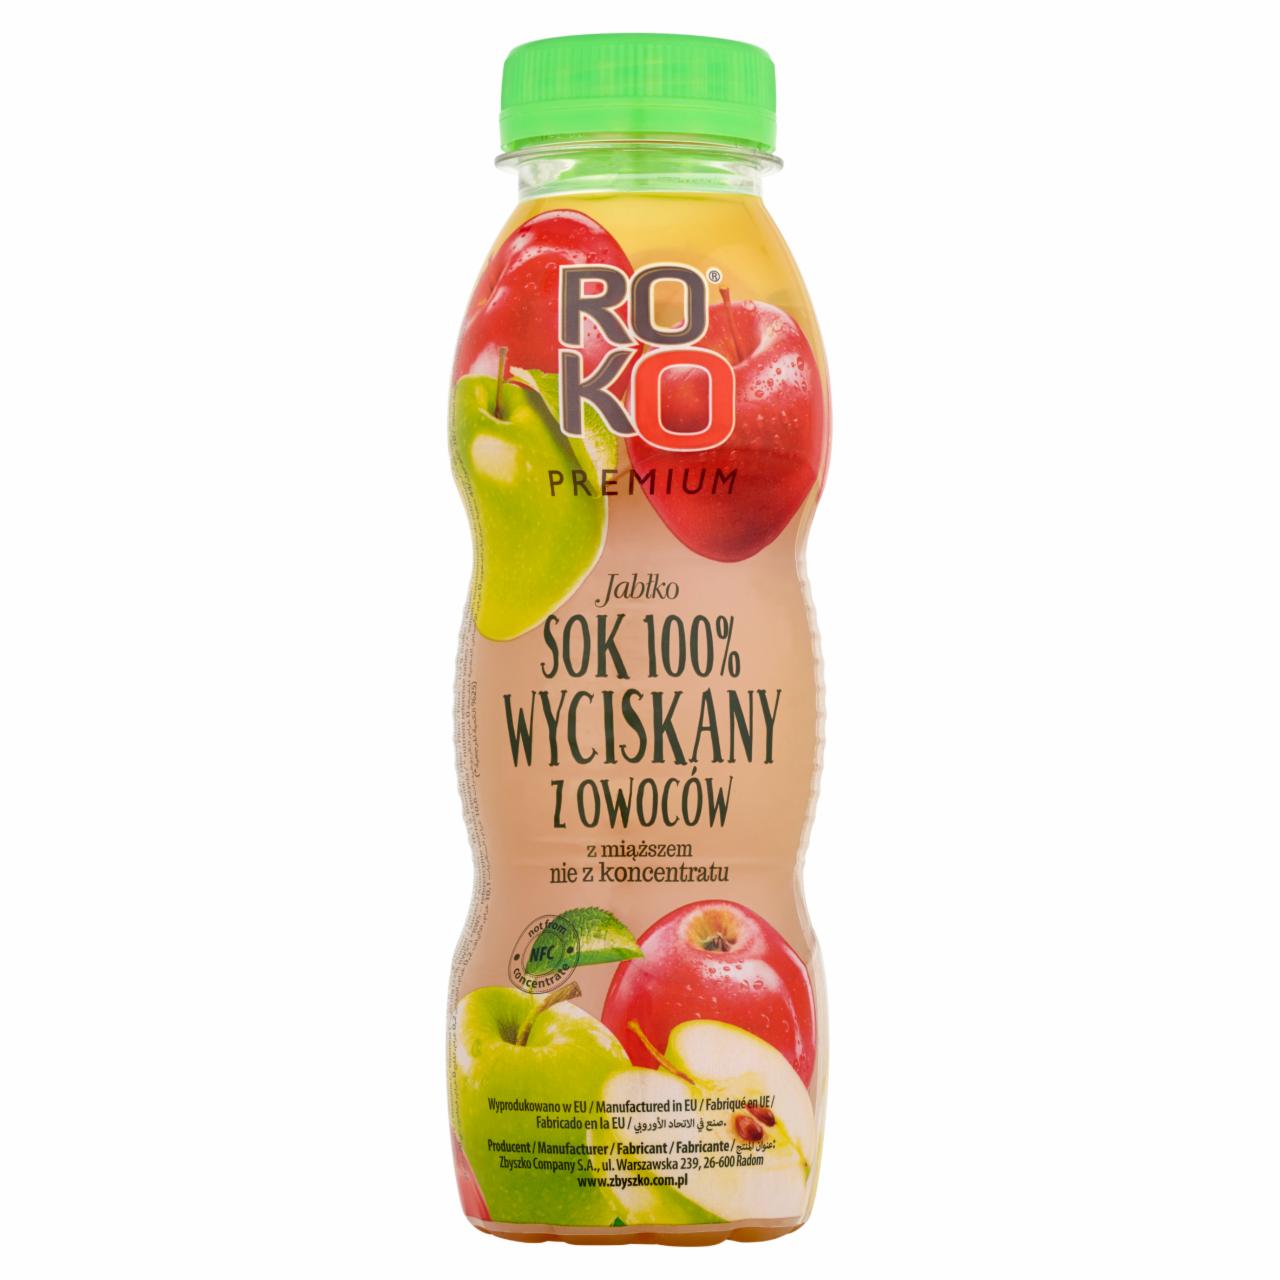 Zdjęcia - ROKO Premium Jabłko Sok 100% wyciskany z owoców 300 ml